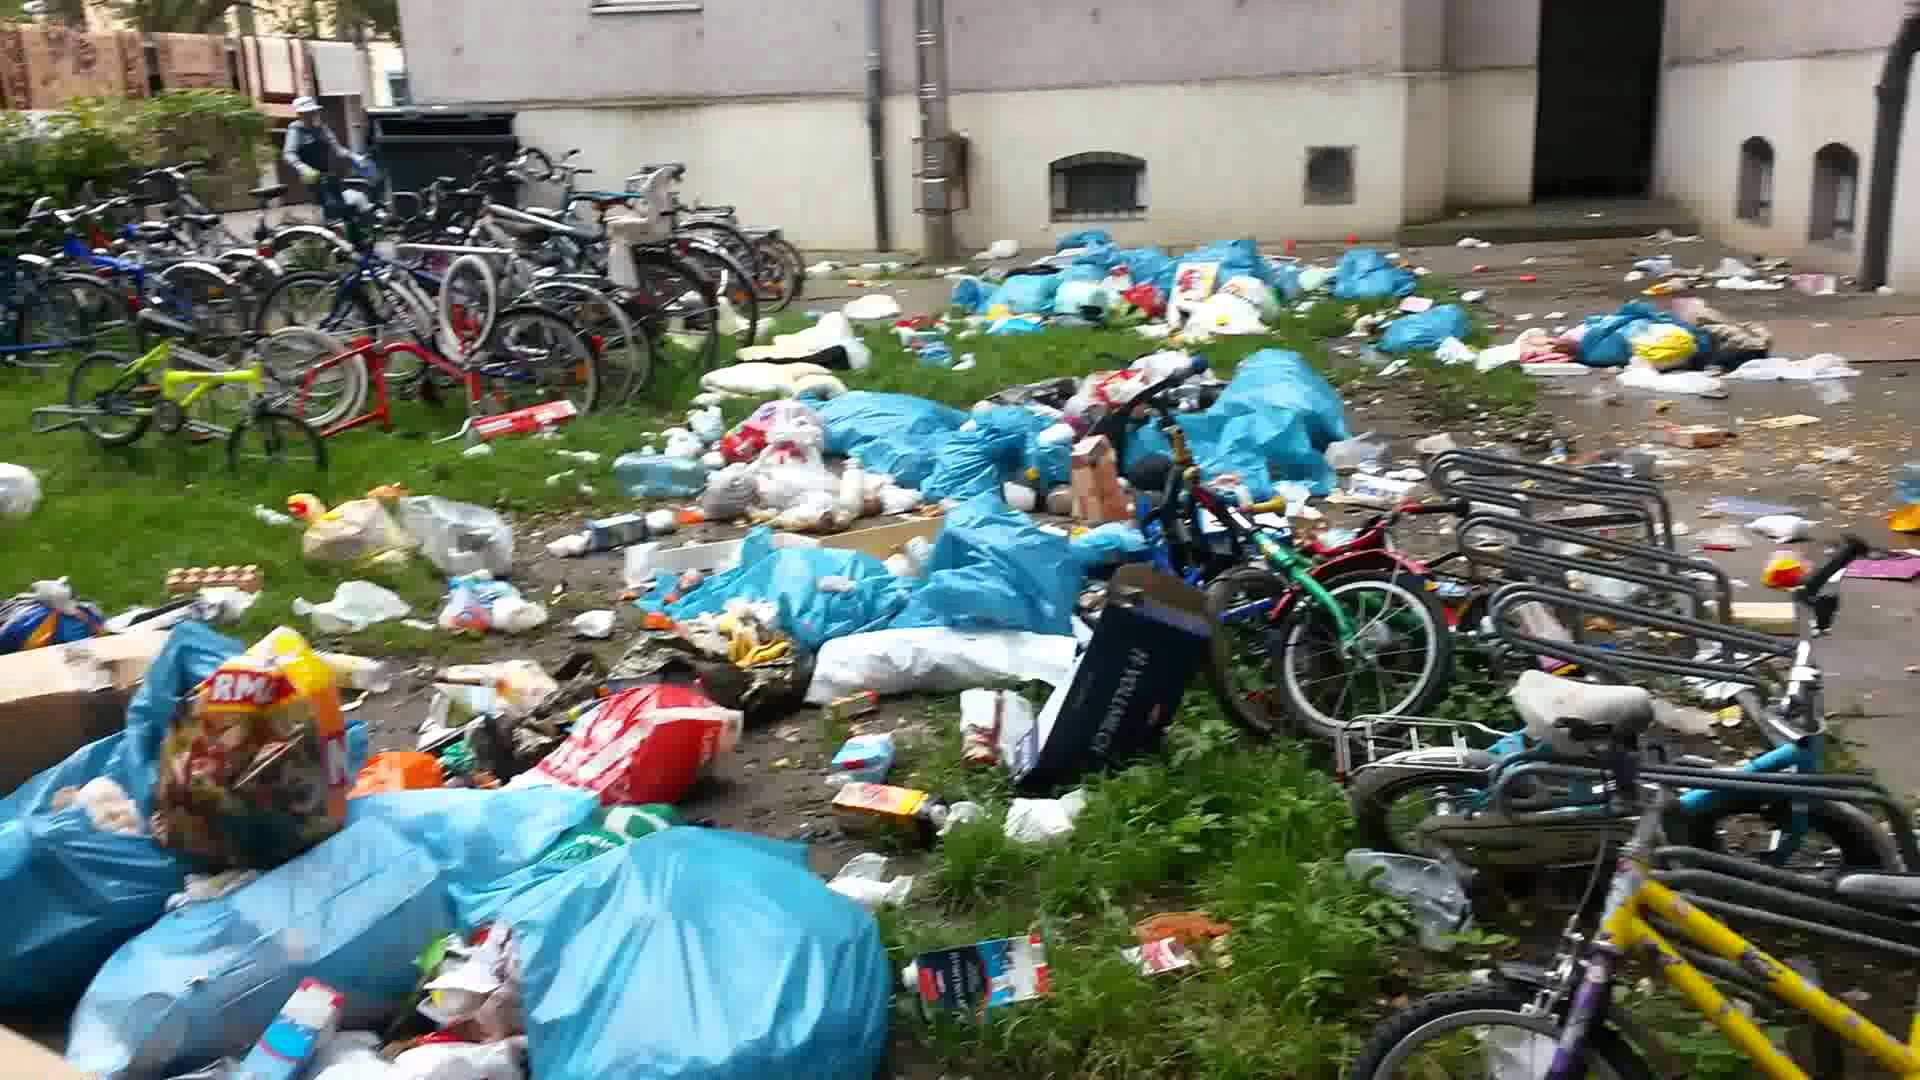 VIDEO: Kur patvēruma meklētāji Vācijā met savus atkritumus?